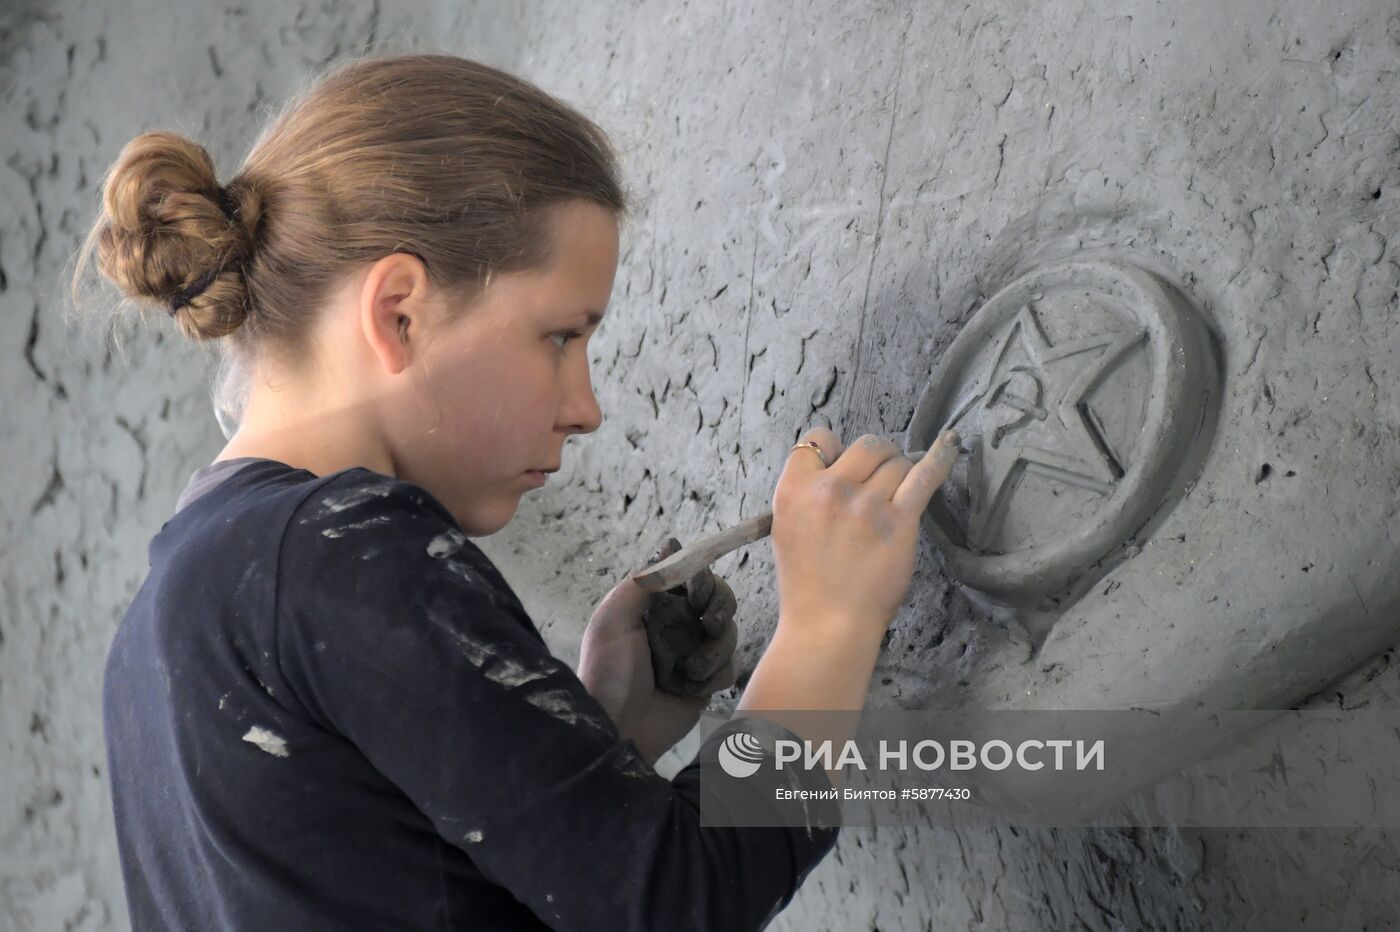 Изготовление фигуры солдата для Ржевского мемориала